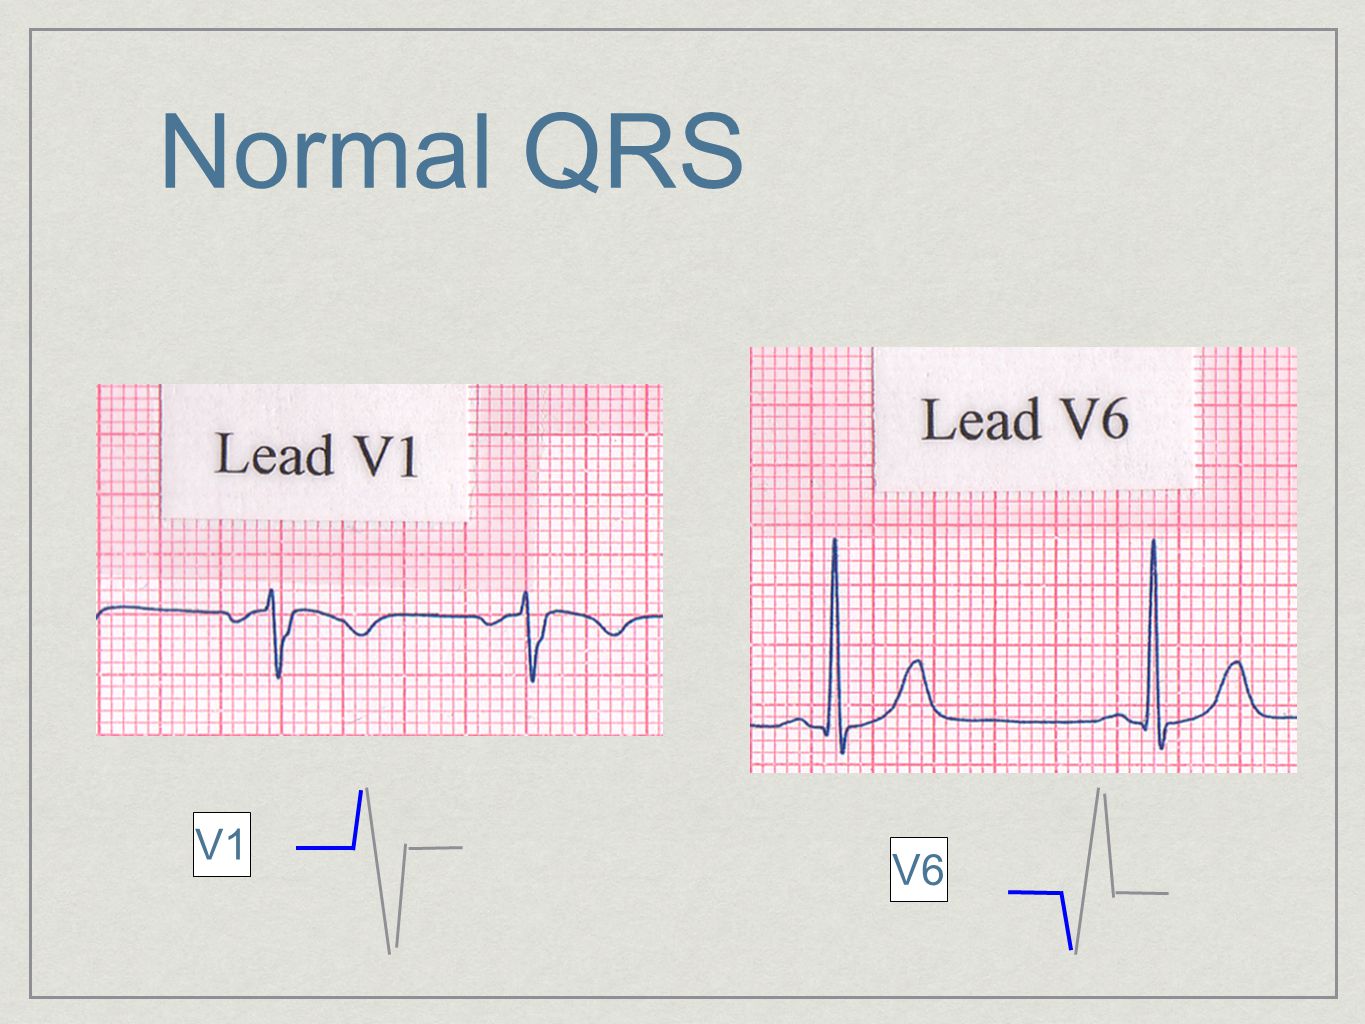 Qrs на экг что это. QRS В v1. Положительный QRS В v1. Измененный сегмент QRS В v1. Детектор QRS комплексов схема.